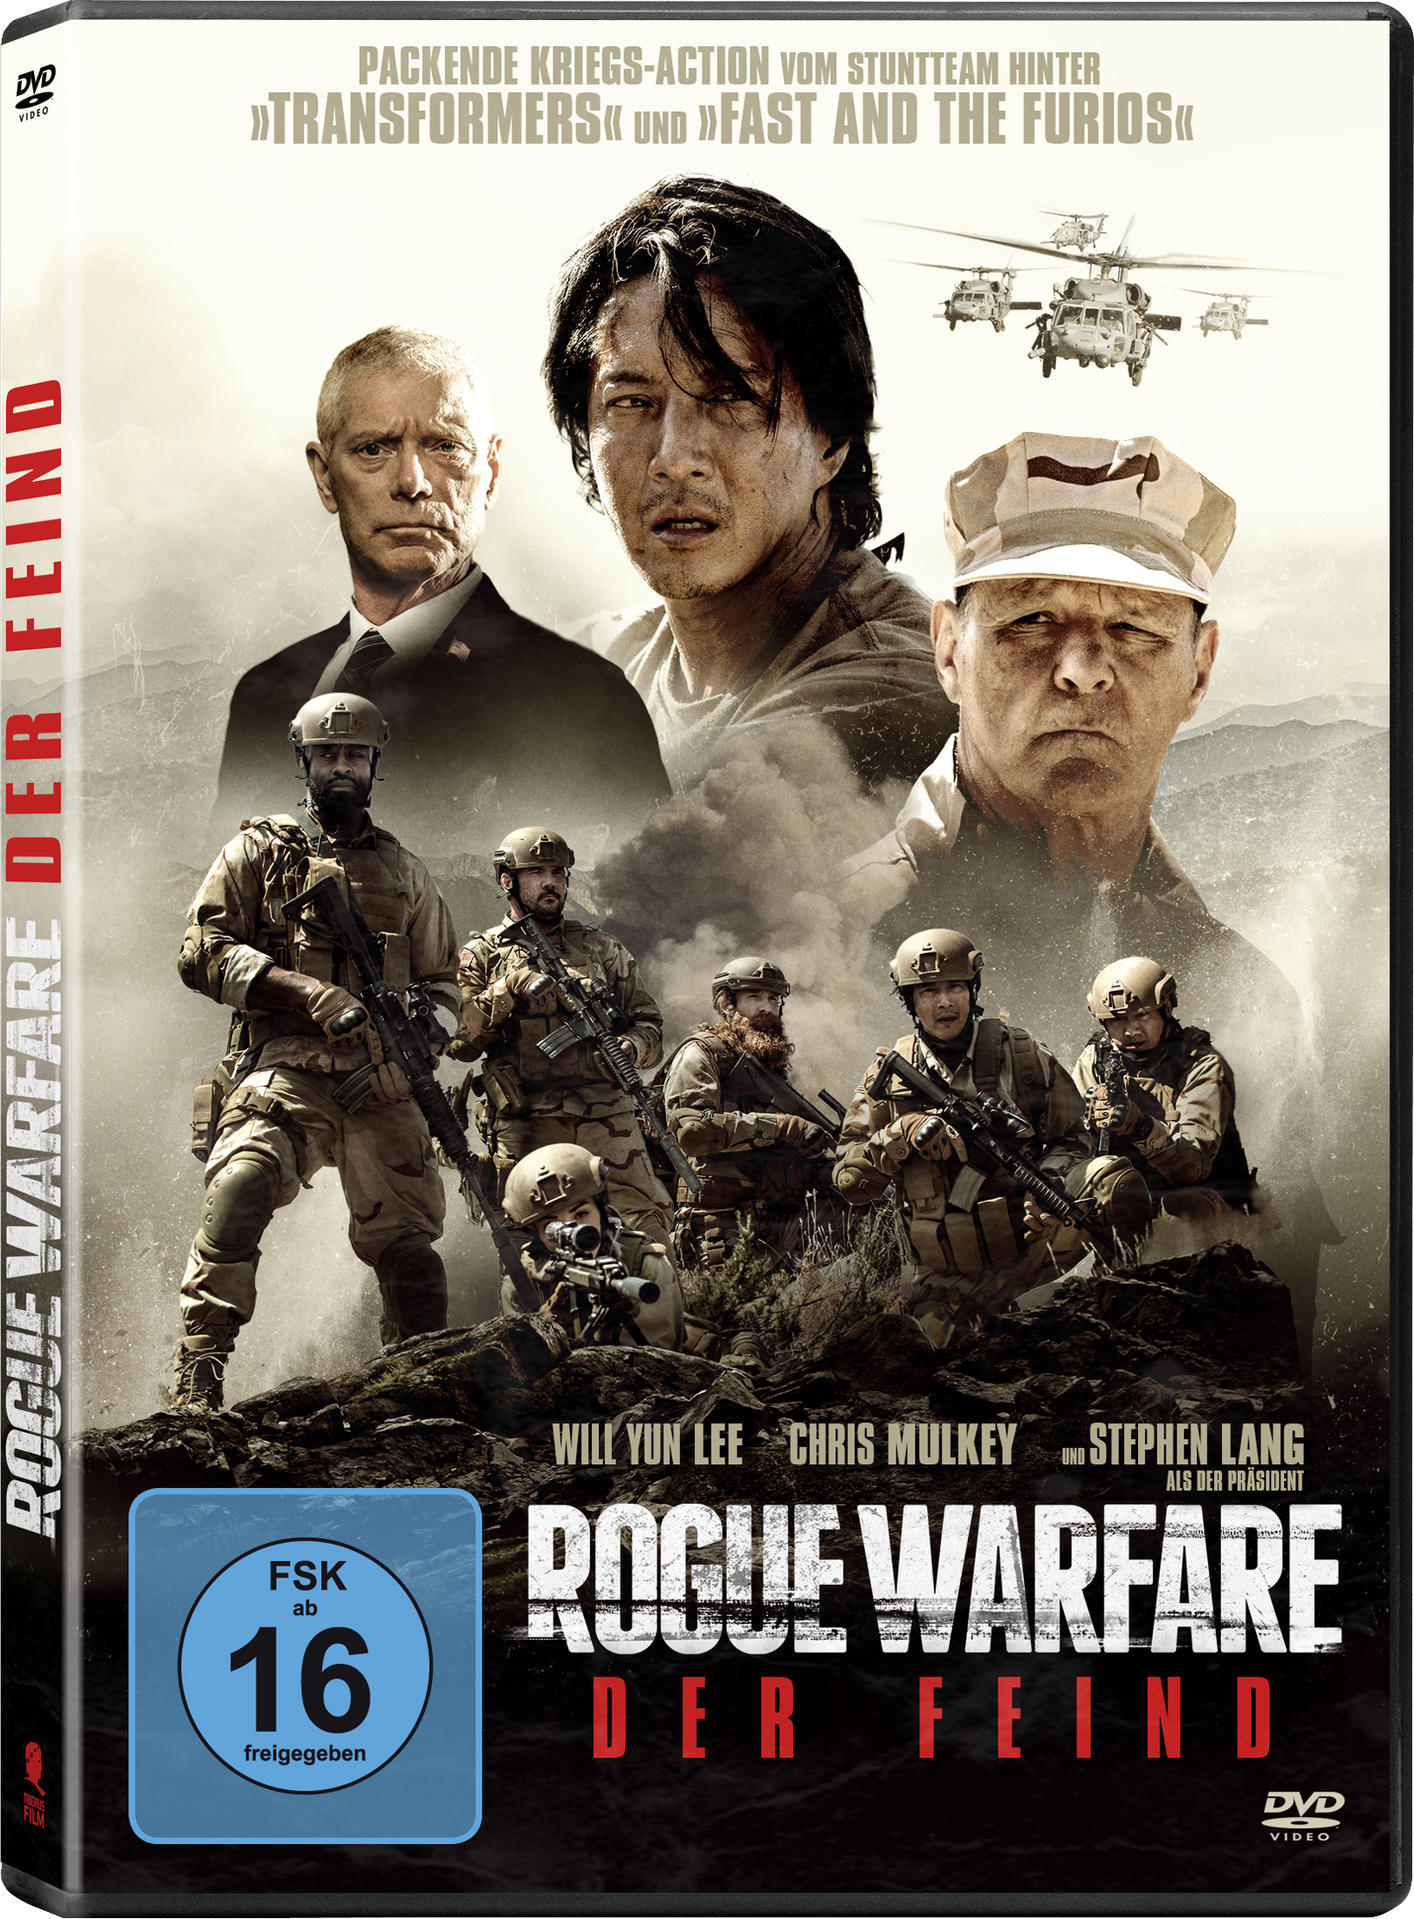 ROGUE WARFARE FEIND DER - DVD